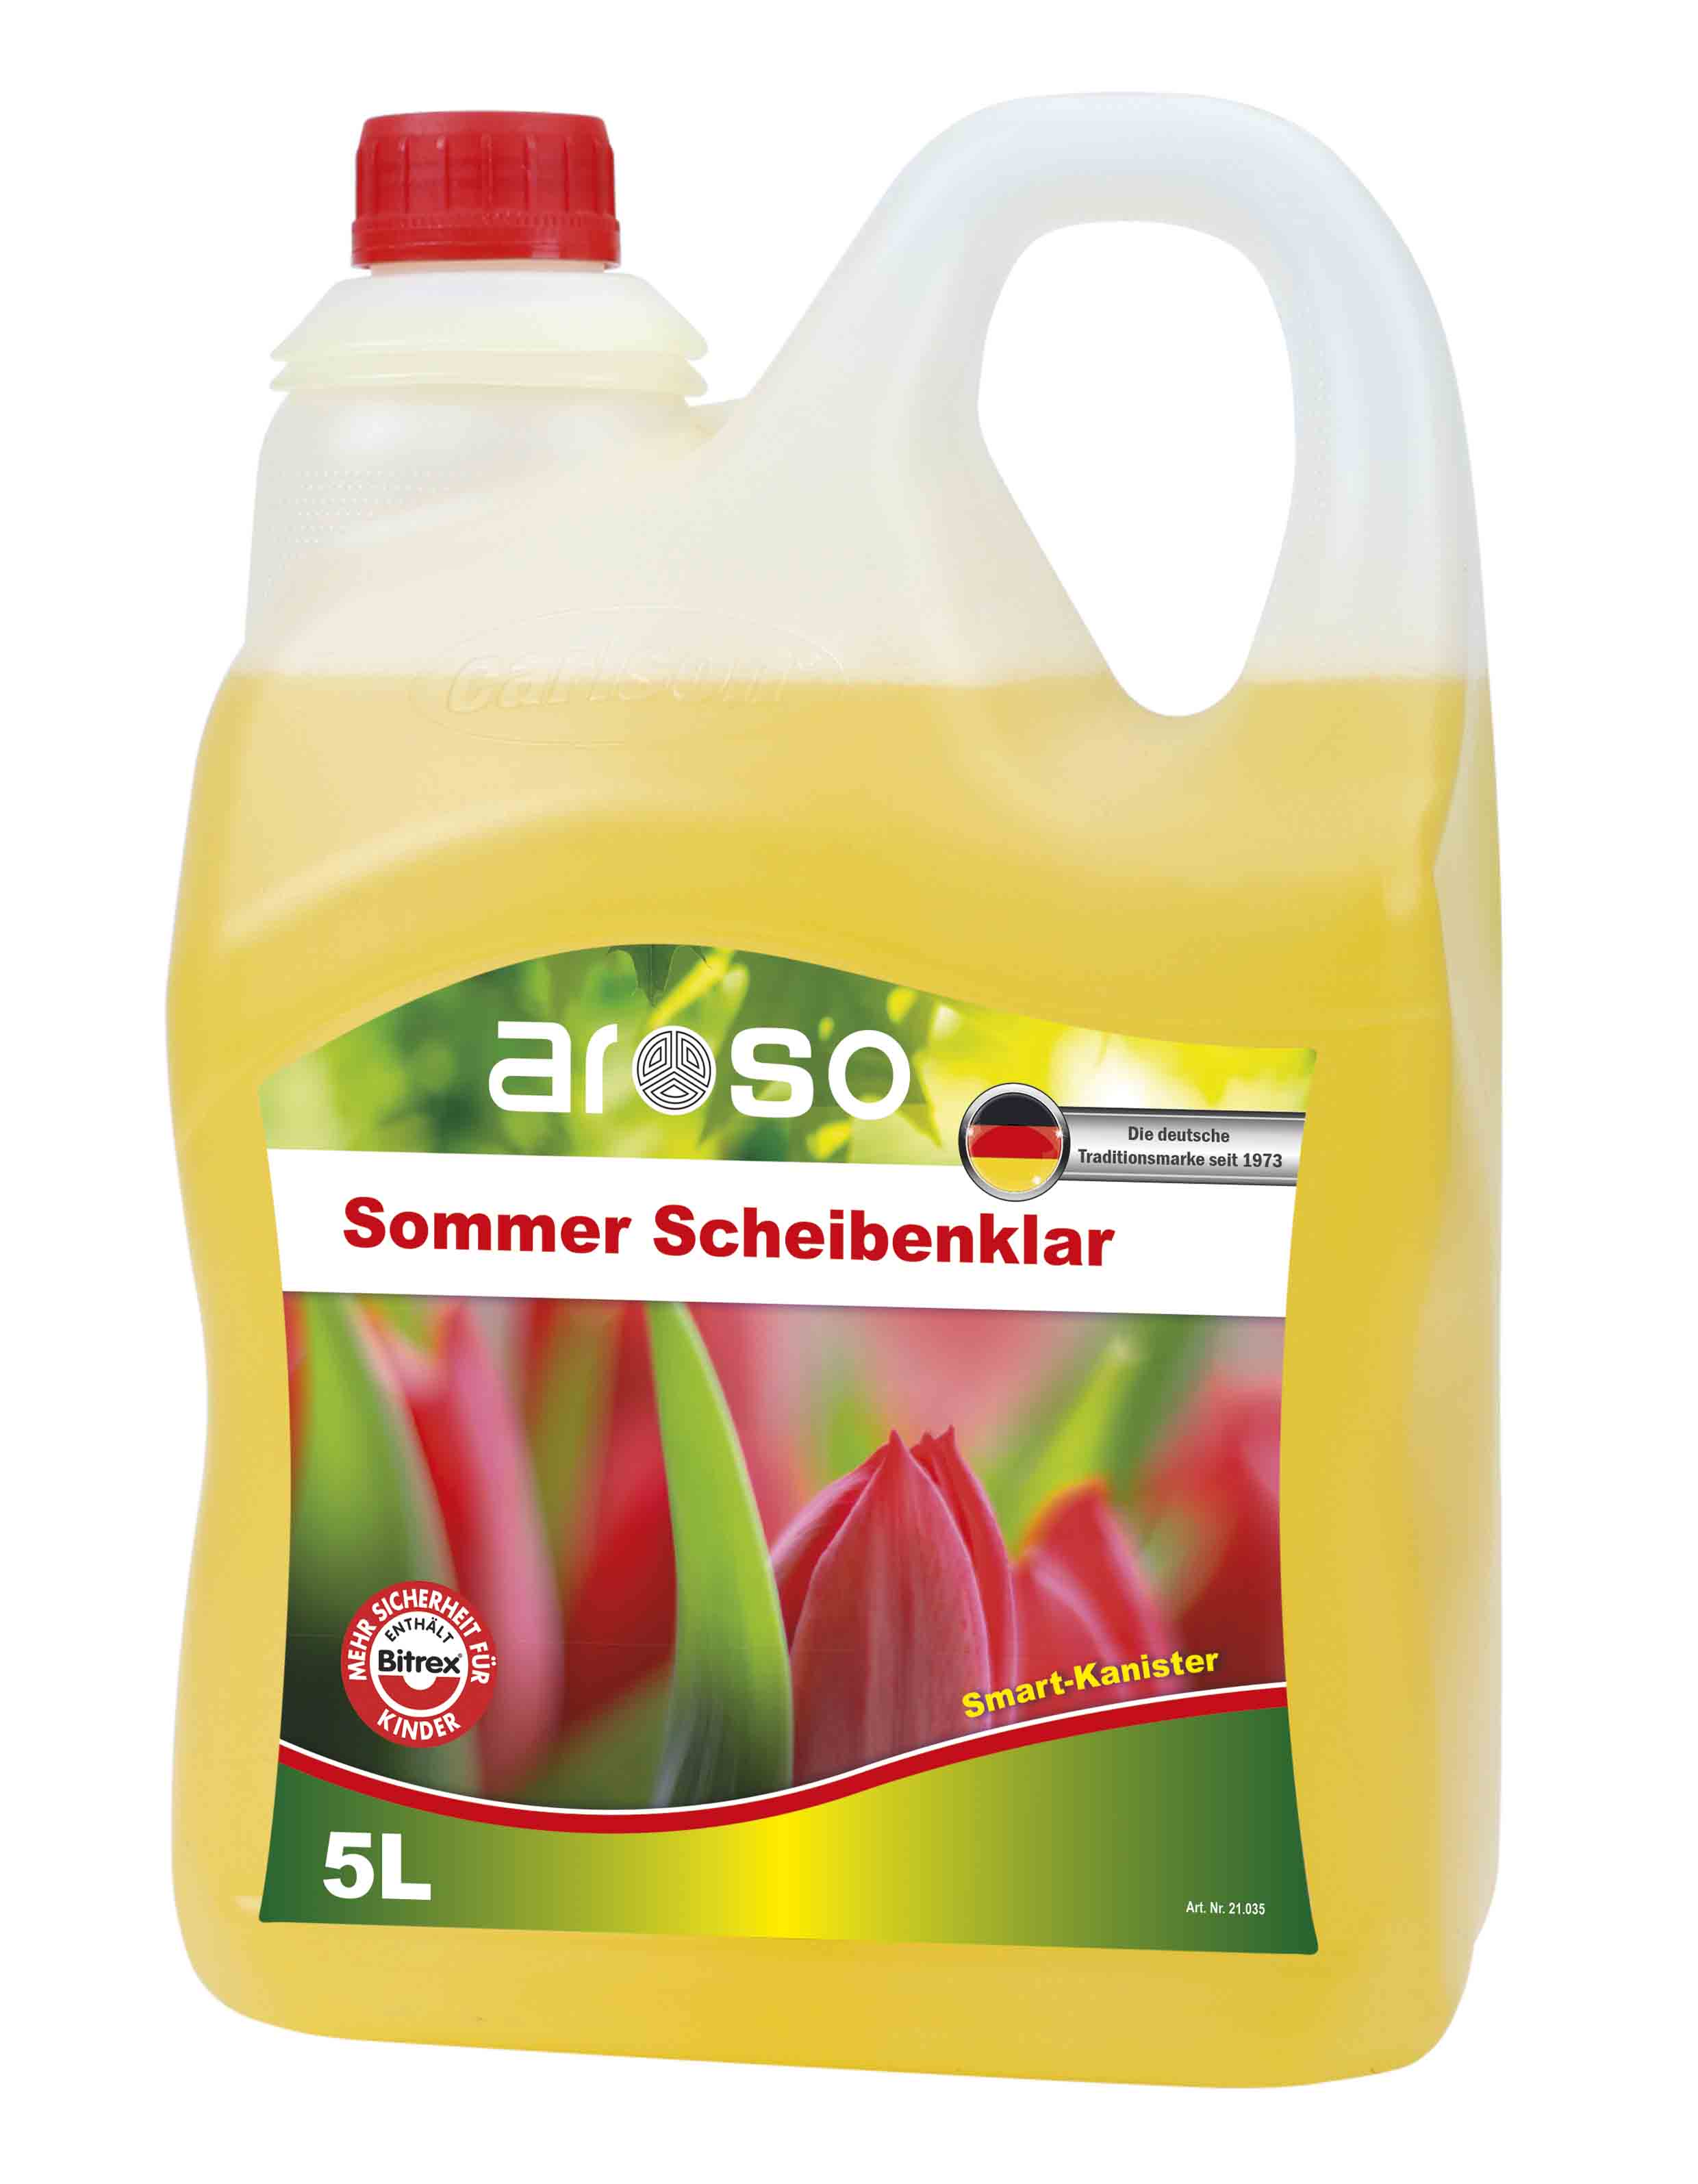 Aroso SOMMER-Scheibenklar - Clever-Kanister 5l